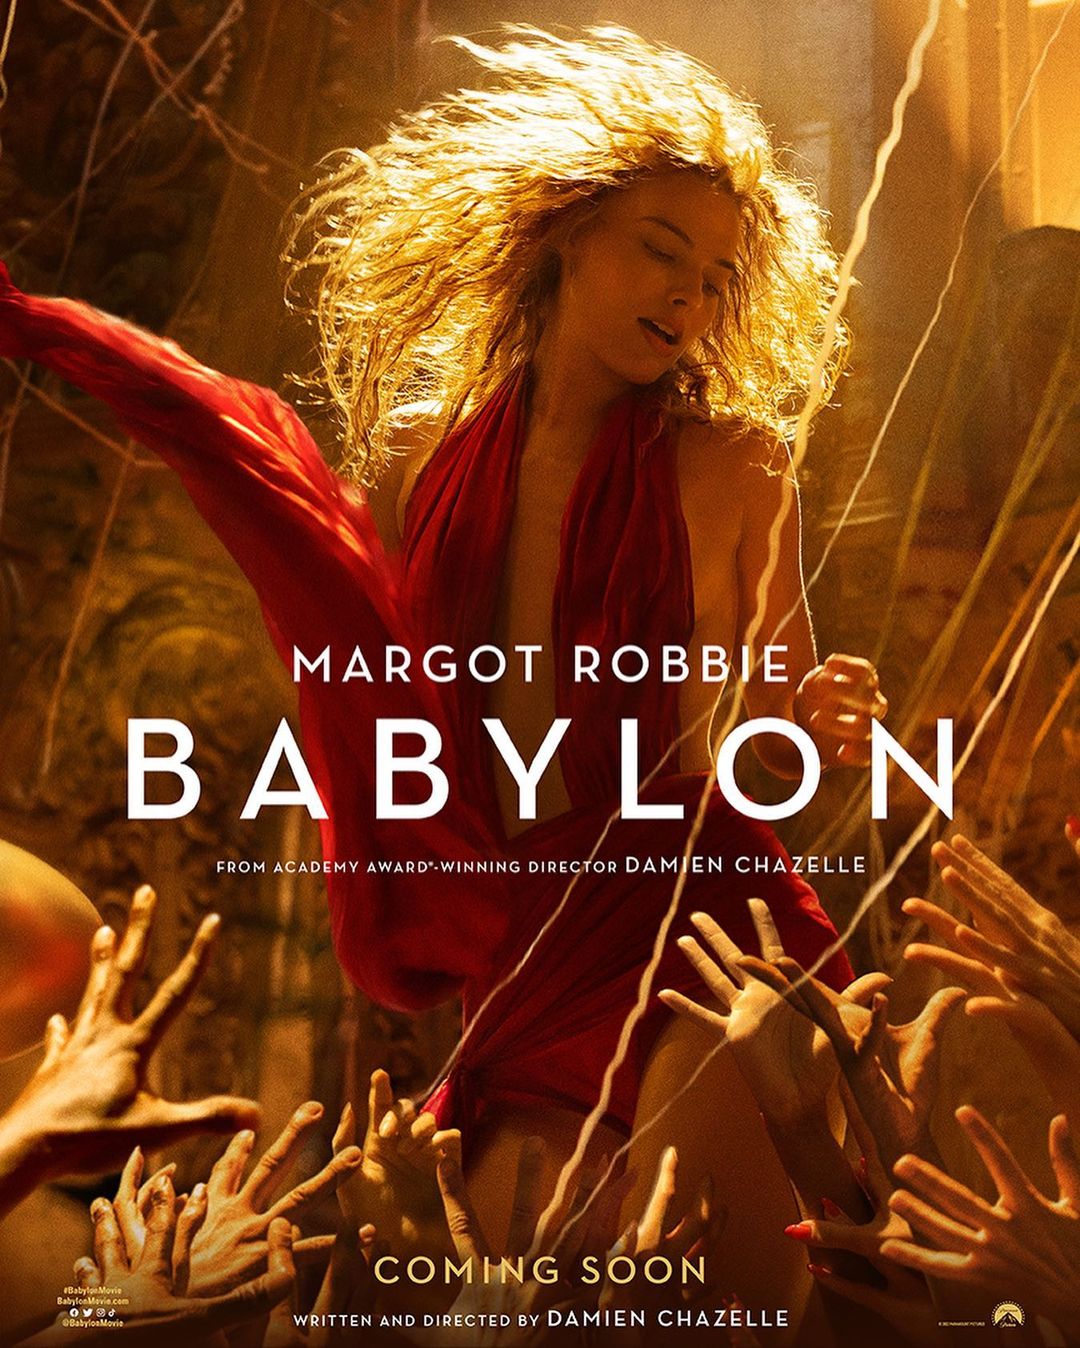 kaltak | “Damien Chazelle'in 'Babylon' filminin ilk fragmanı oldukça hedonist” linkler